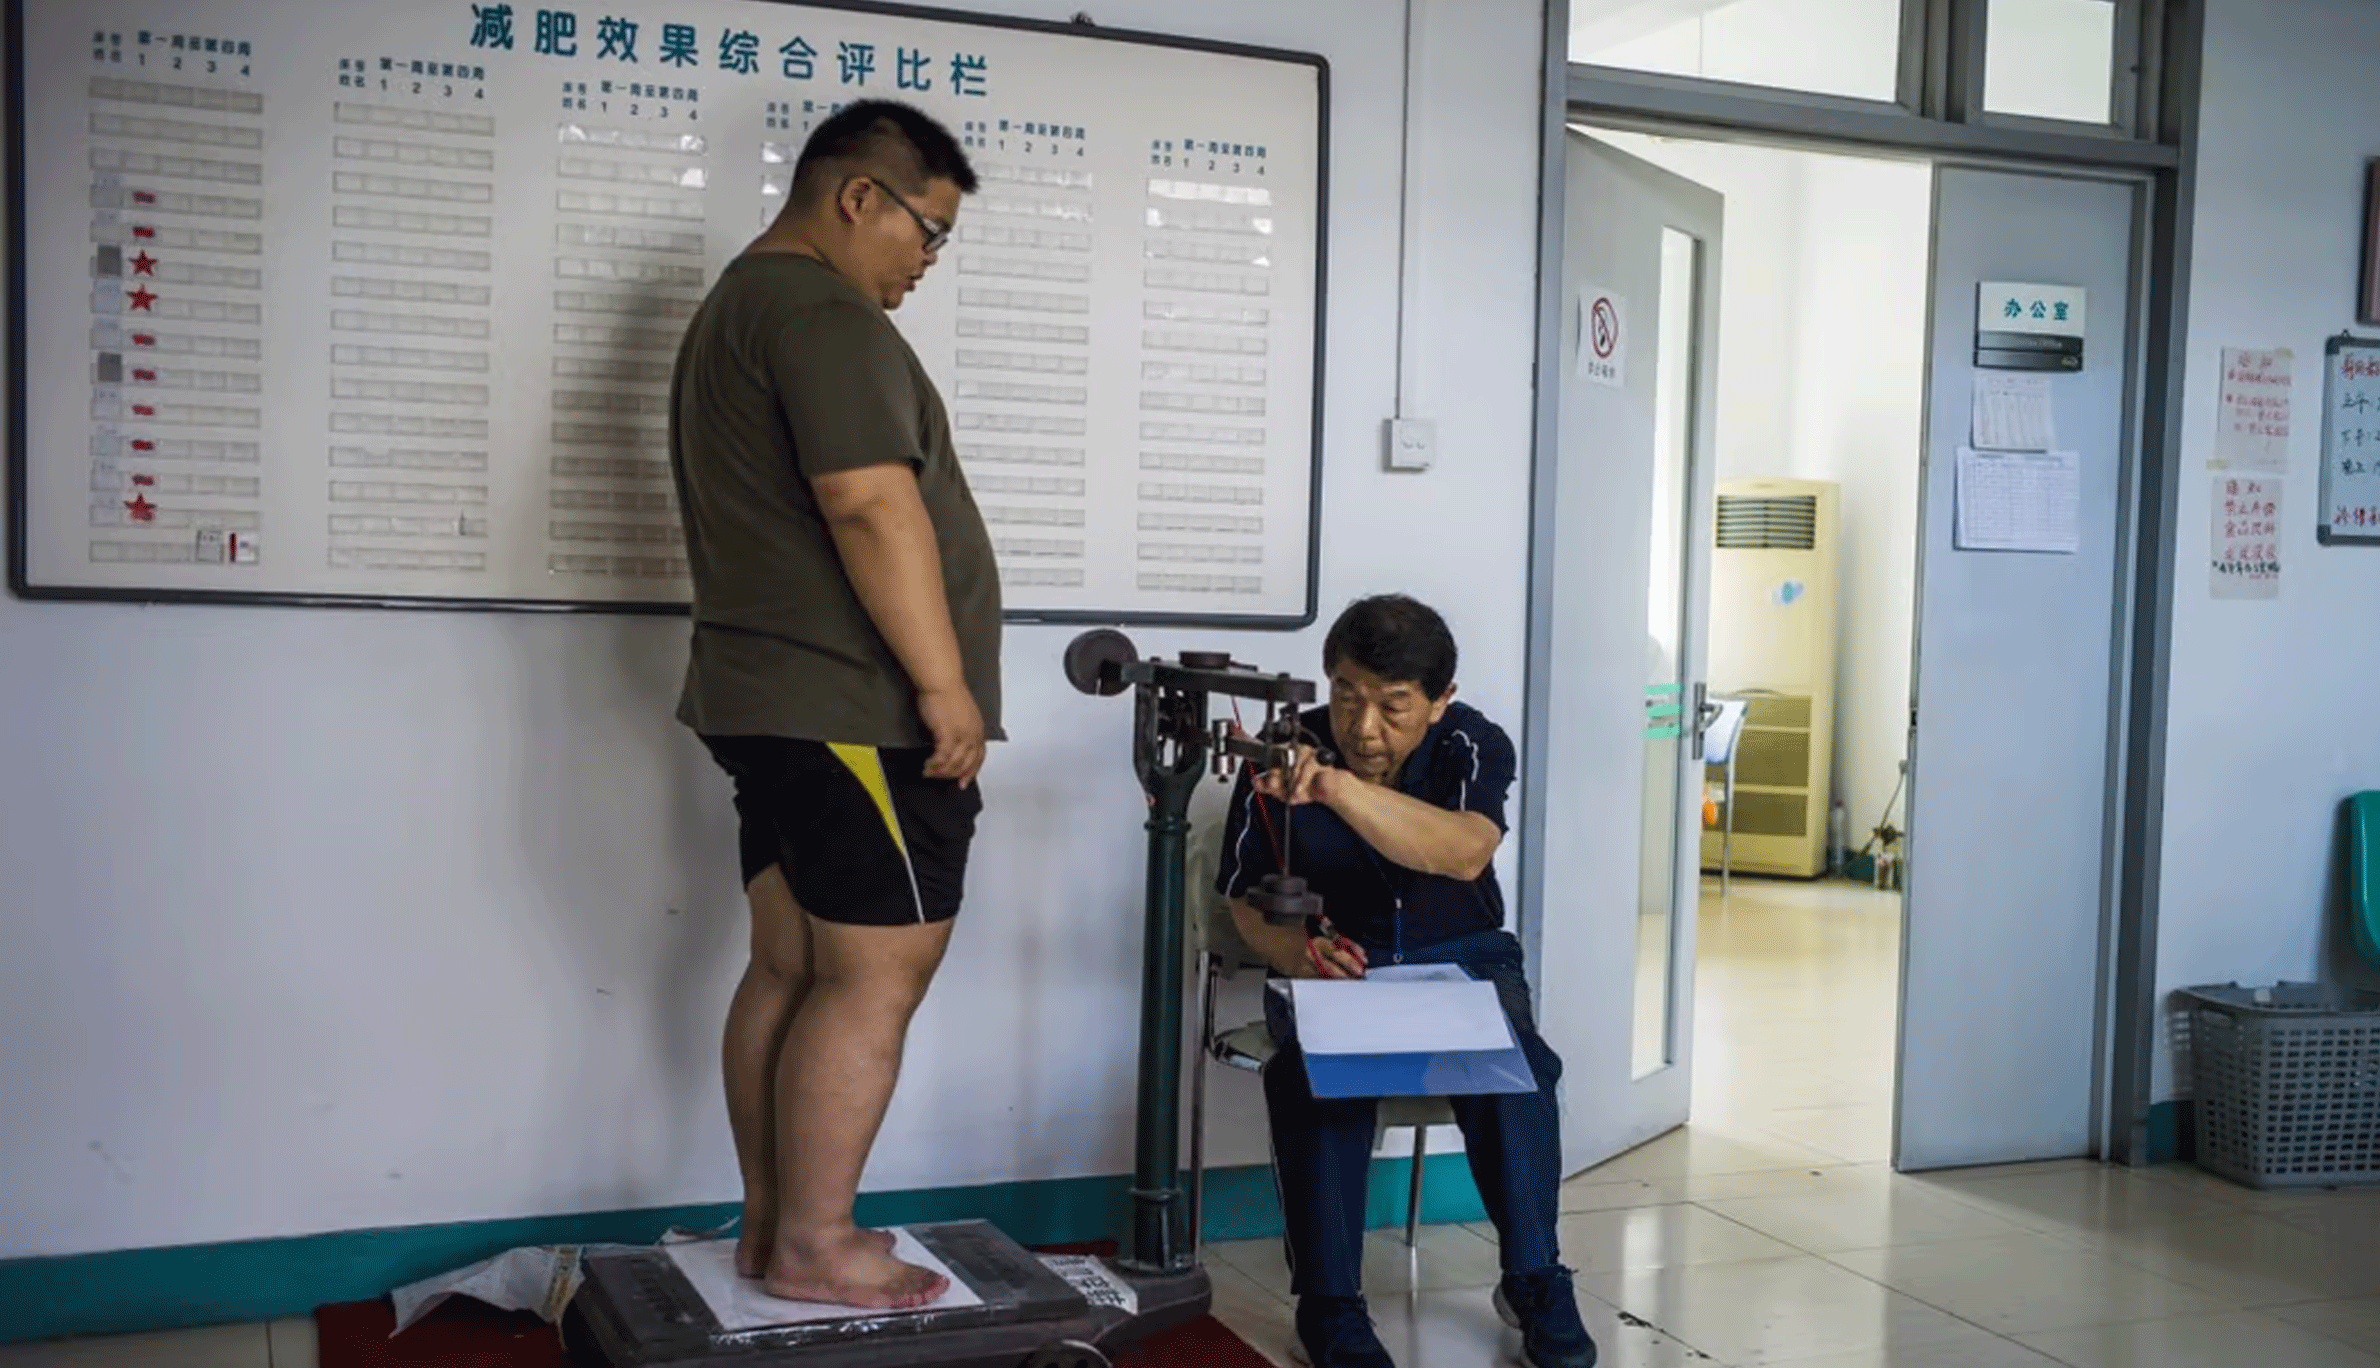 دراسة جديدة تقول أن حوالي 19 في المئة من المراهقين الذين تتراوح أعمارهم بين 6 و 17 عامًا في الصين يعانون من زيادة الوزن أو السمنة